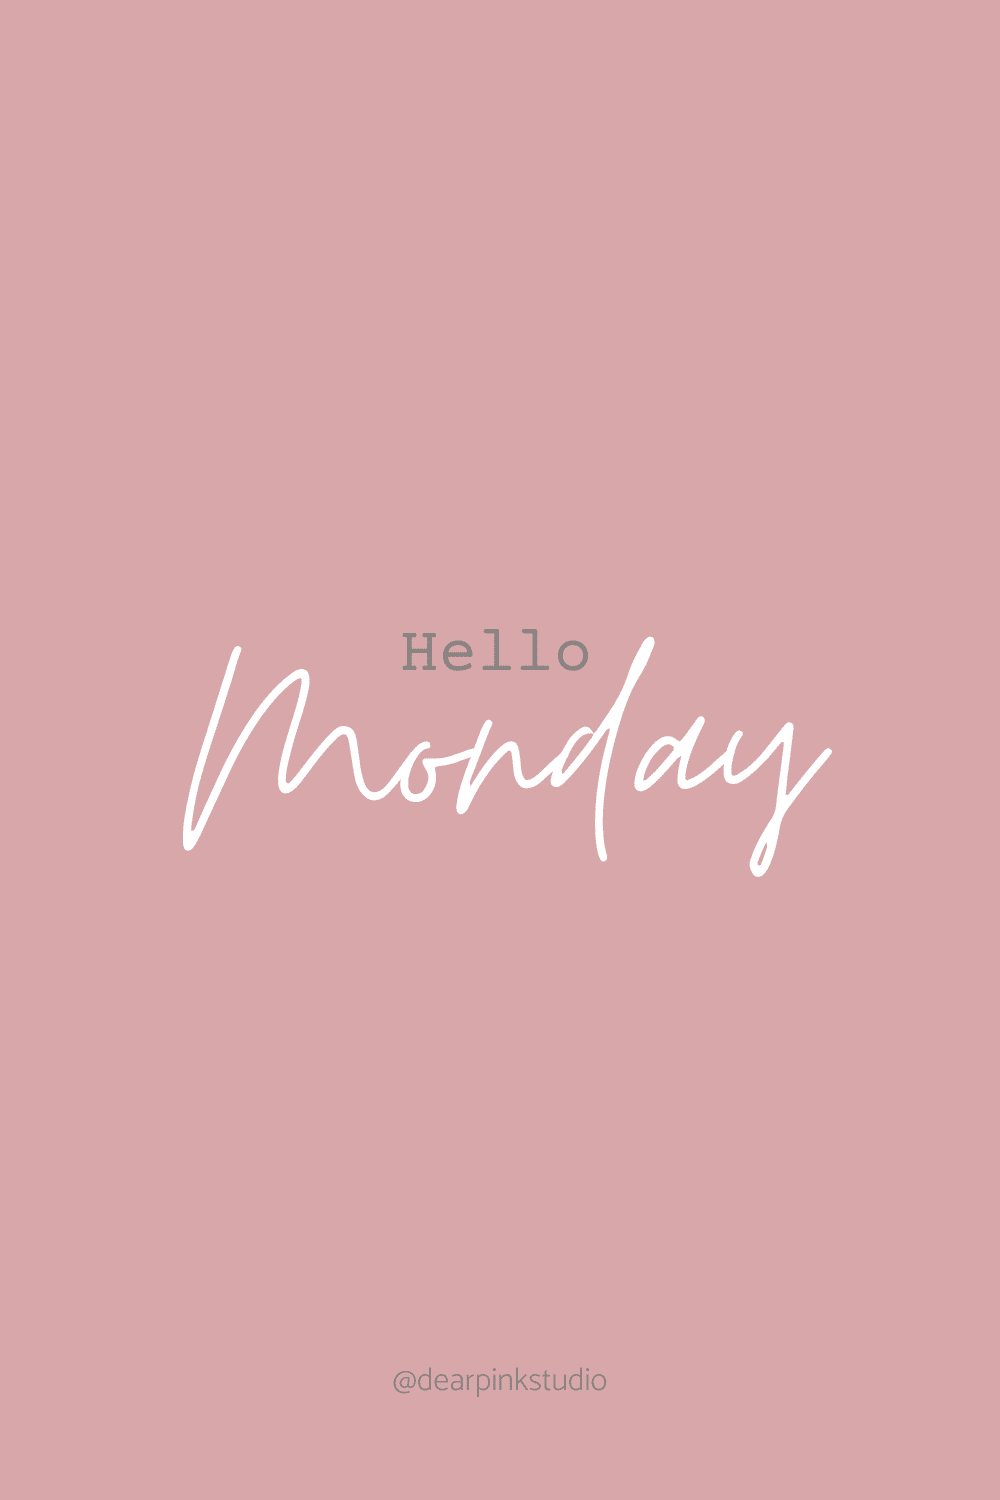 Hello Monday!